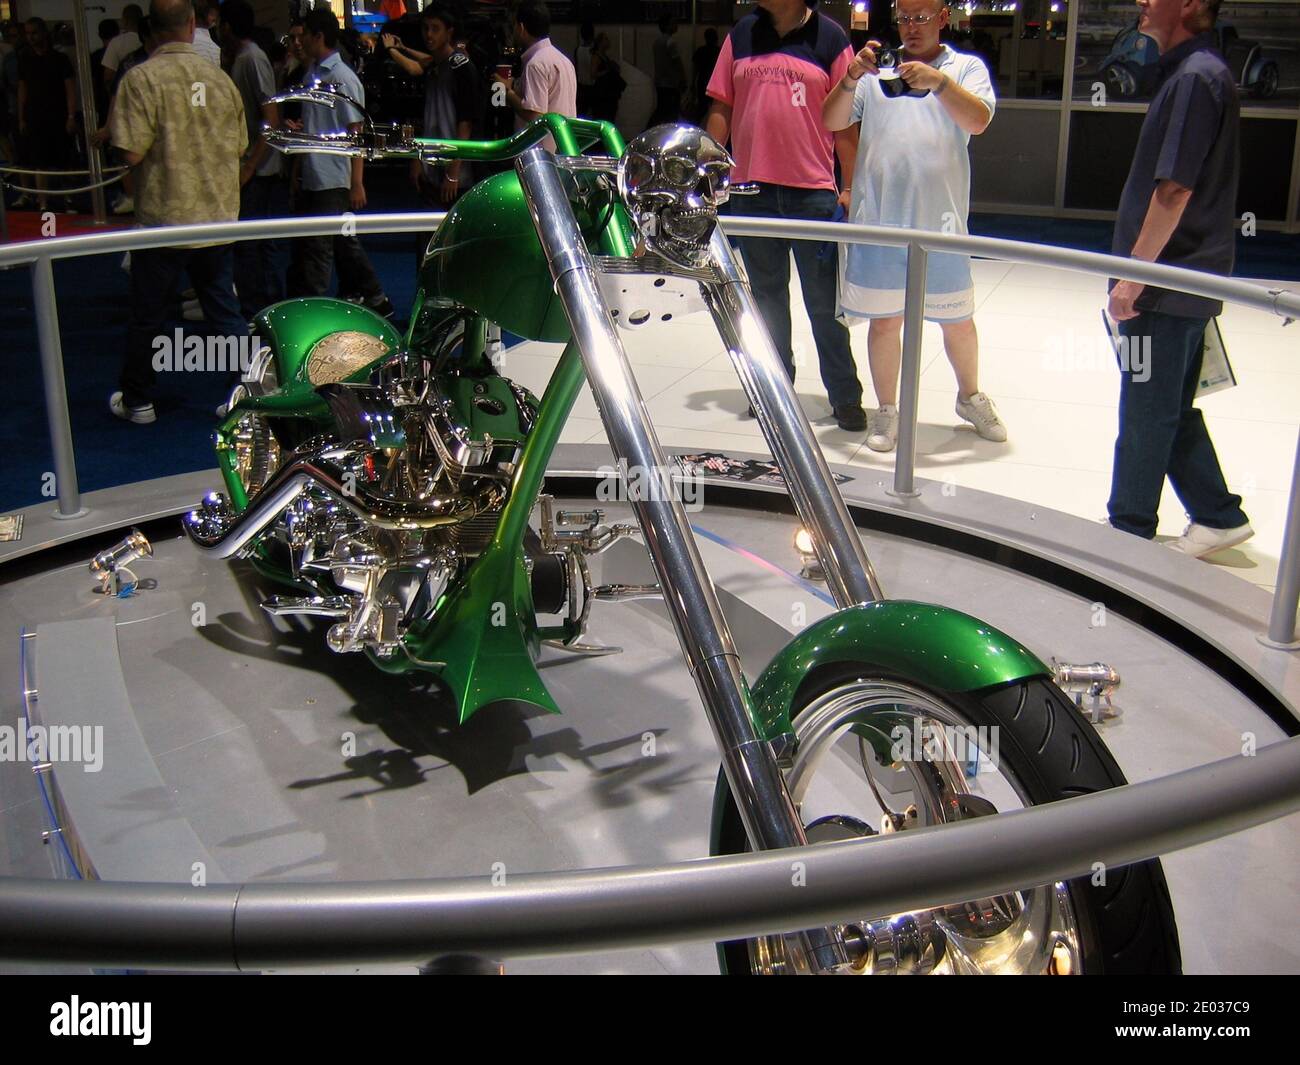 Moto hacheuse personnalisée avec peinture verte et crâne chromé et mécanique exposée au salon de l'automobile de Londres Londres Angleterre UK 2006 Banque D'Images